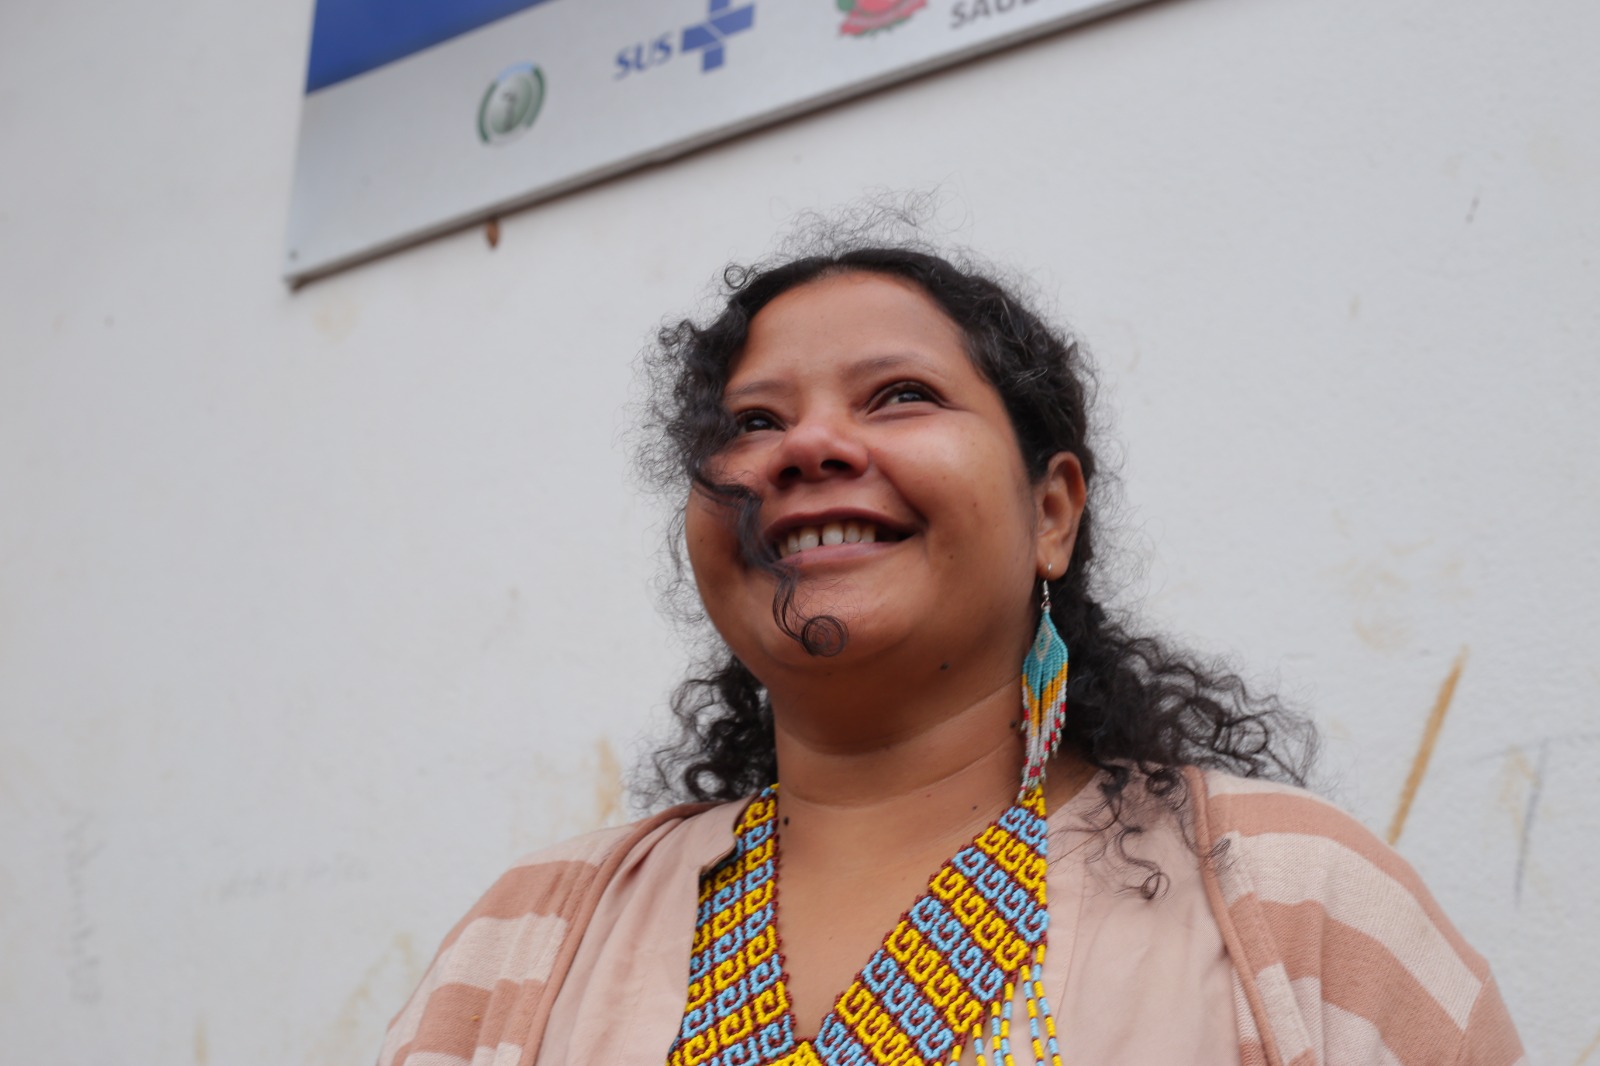 A foto mostra a personagem Poty Poran, uma mulher indígena com cabelos enrolados, sorrindo. Ela usa ainda colar e brincos de miçangas nas cores azul e amarelo